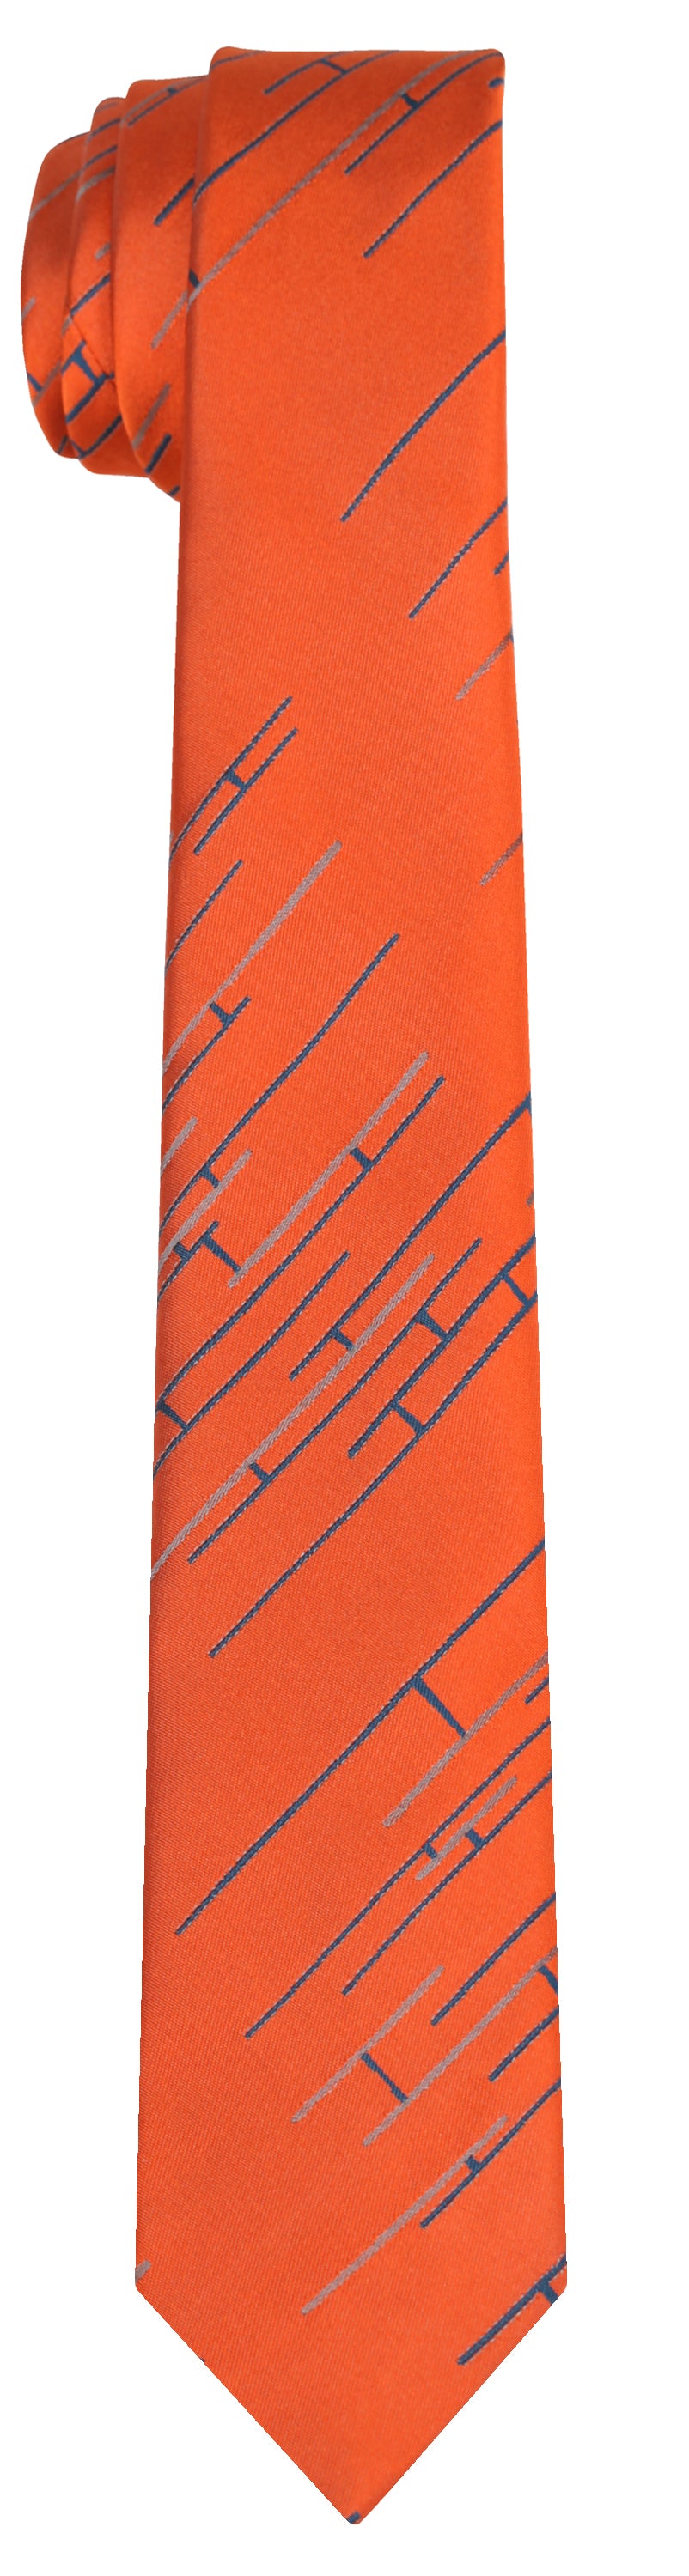 Mimi Fong Linked Tie in Orange